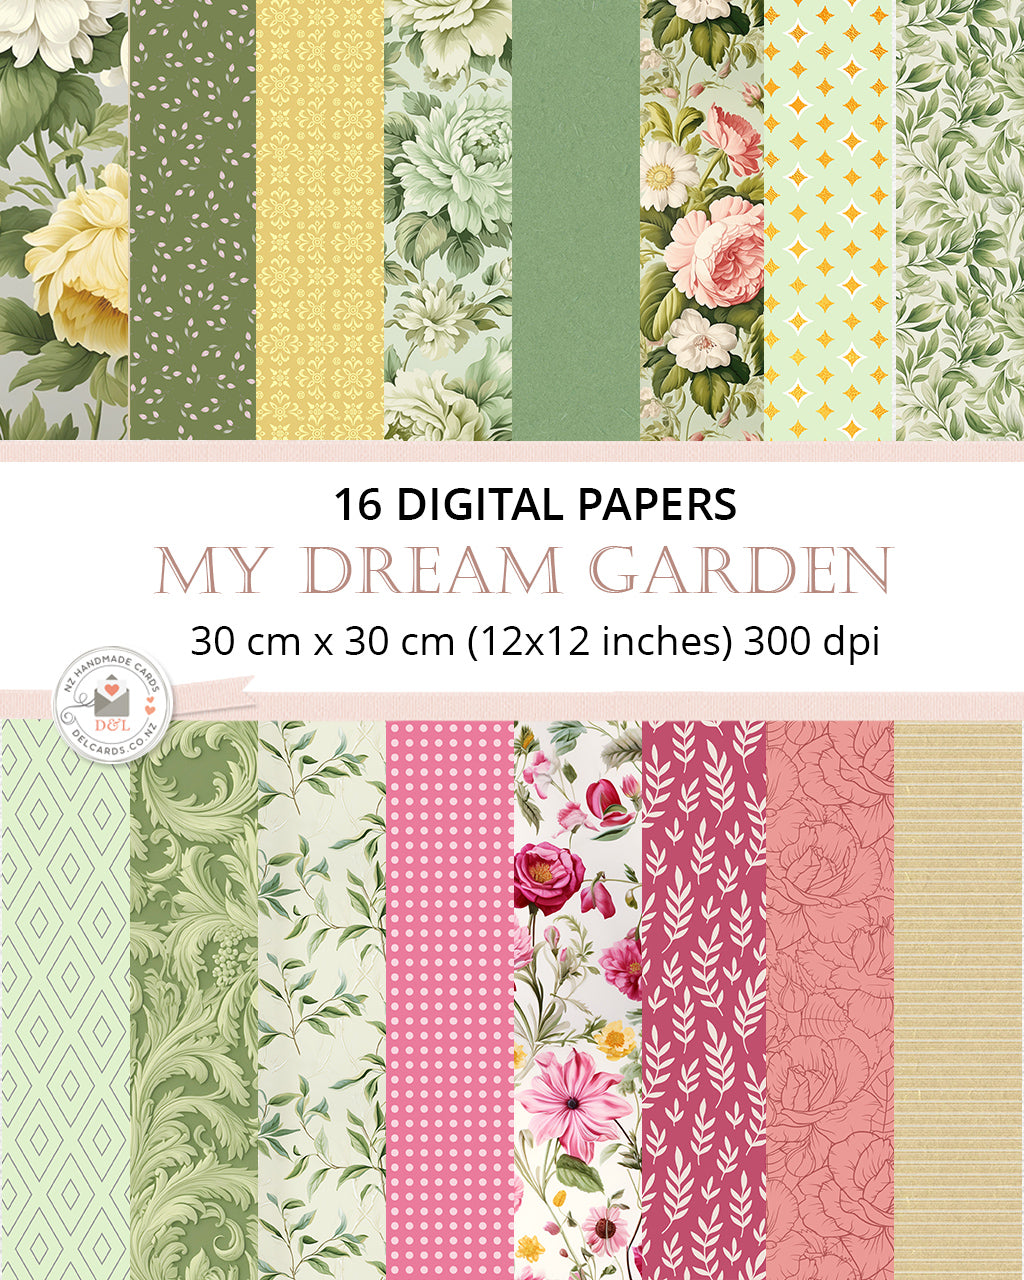 16 Digital Papers - My Dream Garden